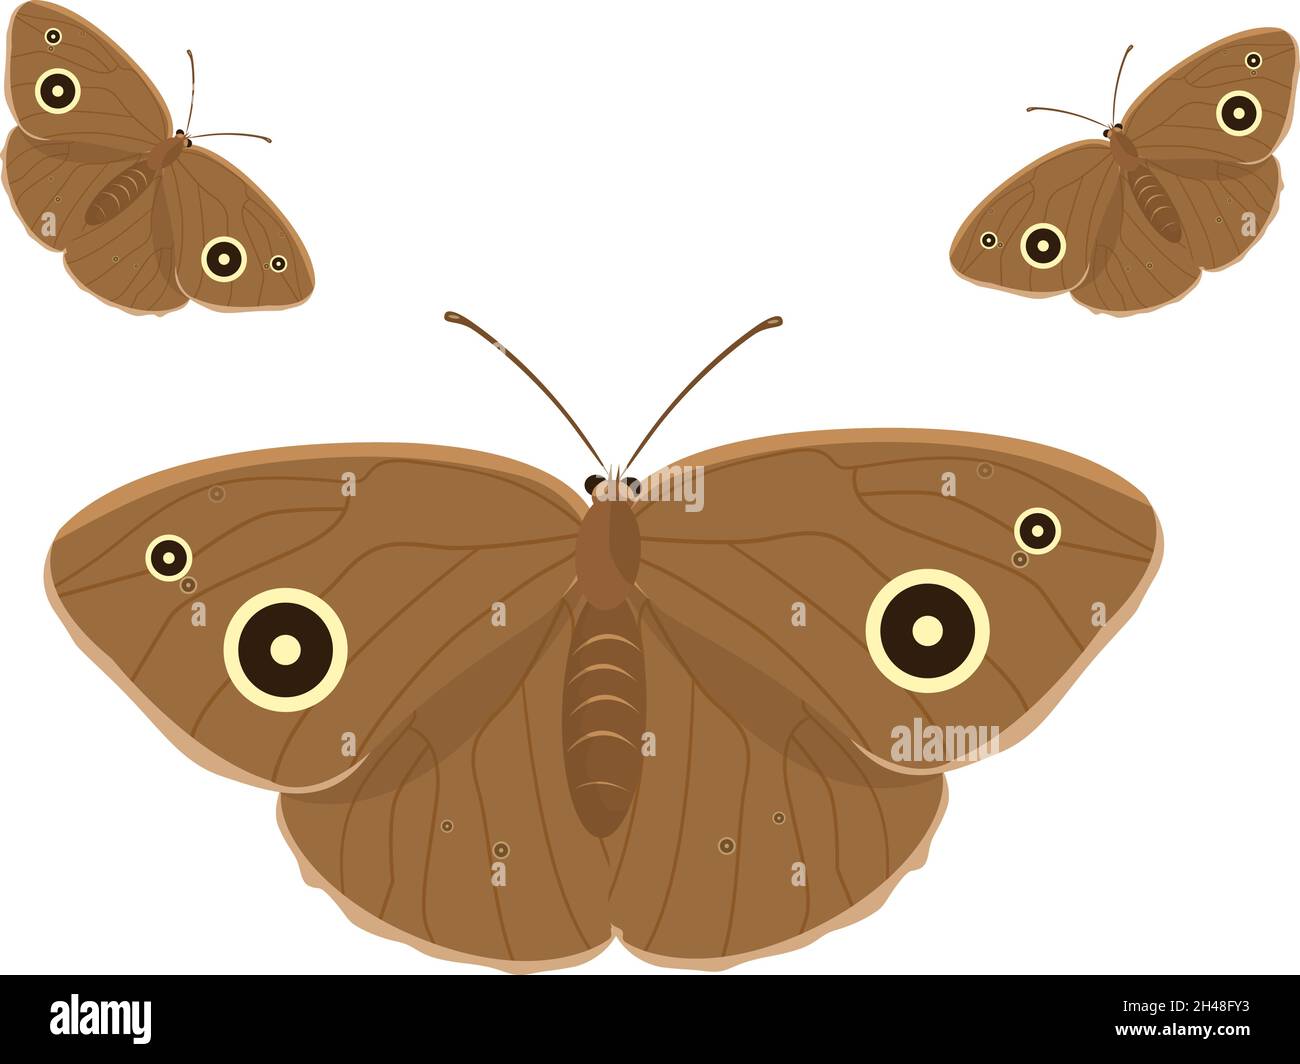 Brauner Schmetterling, Illustration, Vektor auf weißem Hintergrund. Stock Vektor